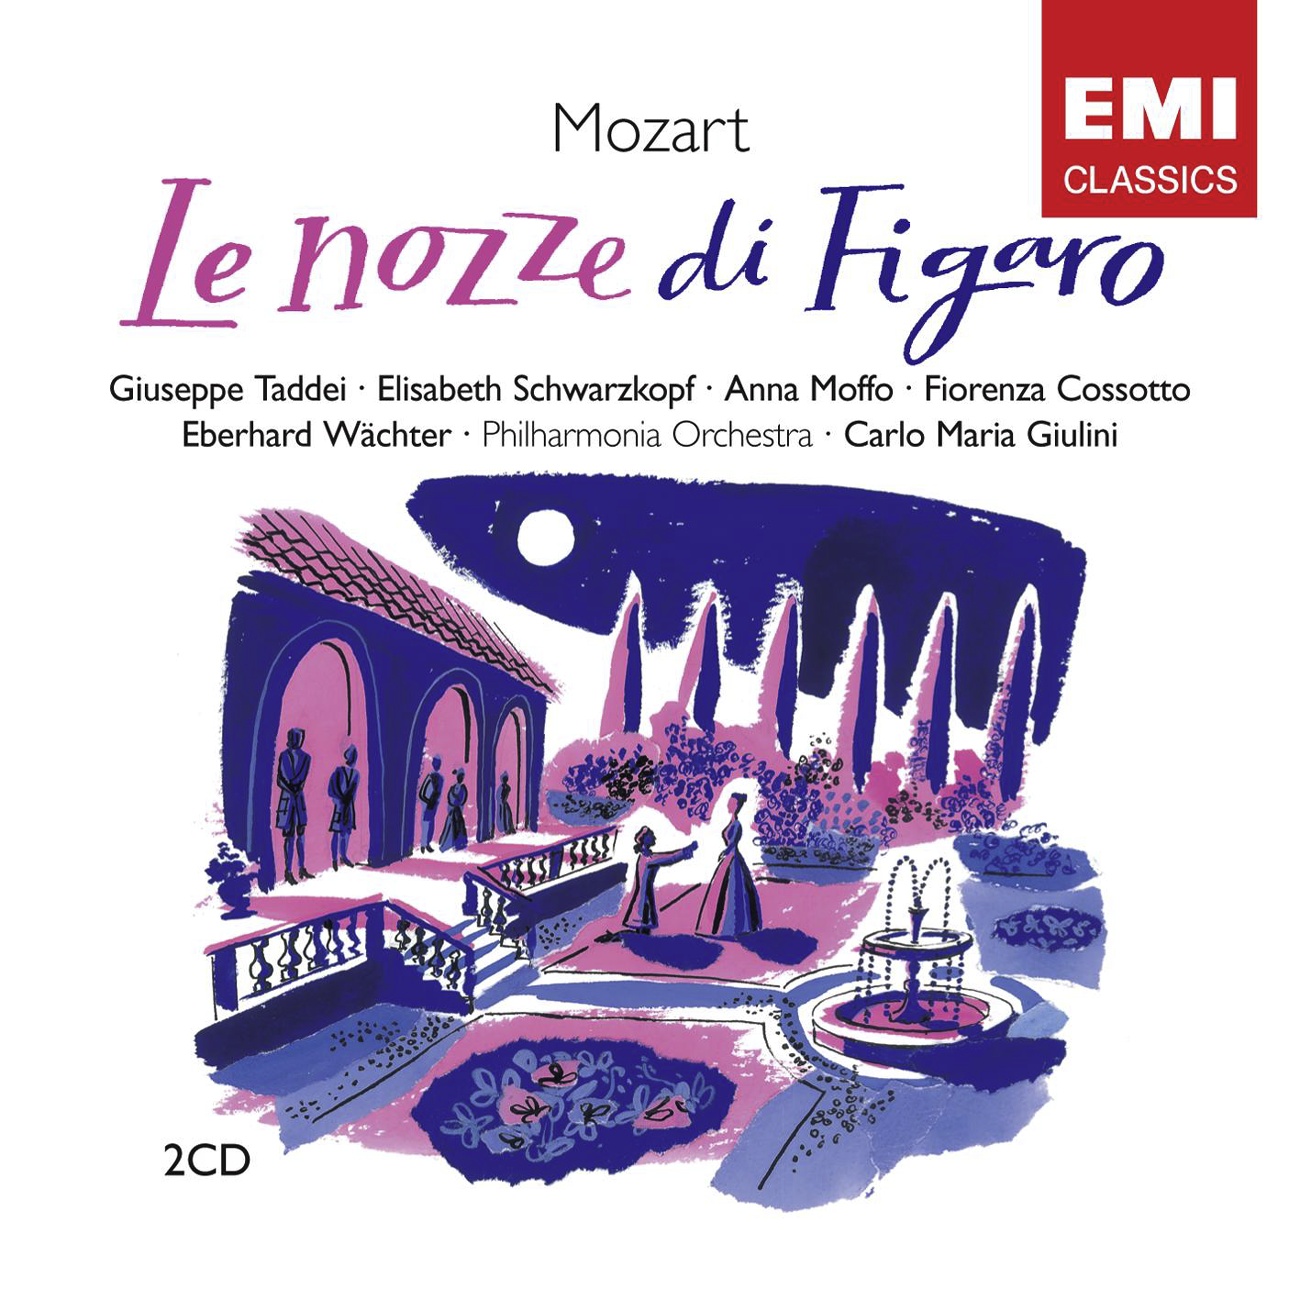 Le nozze di Figaro K492 (1989 Digital Remaster), Atto Secondo: Terzetto:  Susanna, or via sortite (Conte/Contessa/Susanna)